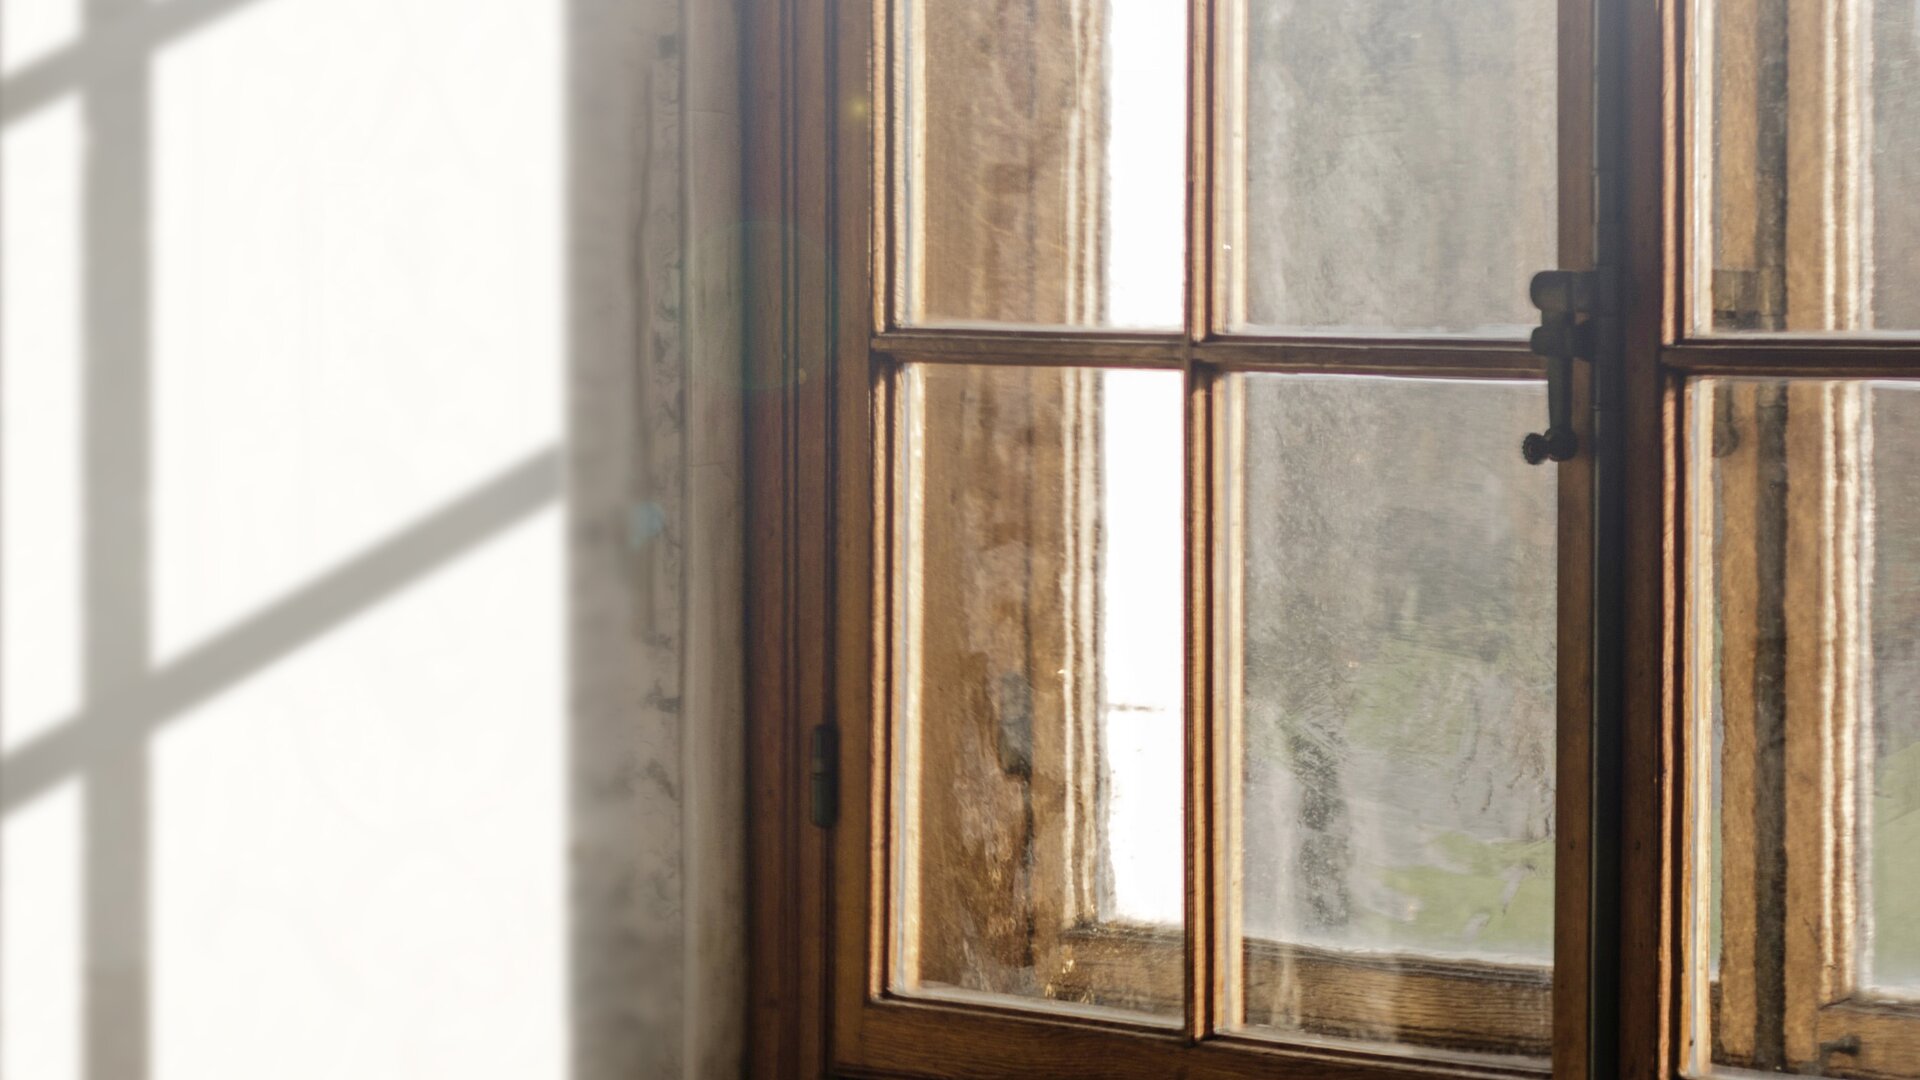 Vista su una doppia finestra in legno colpita dalla luce con la parete interna in ombra.